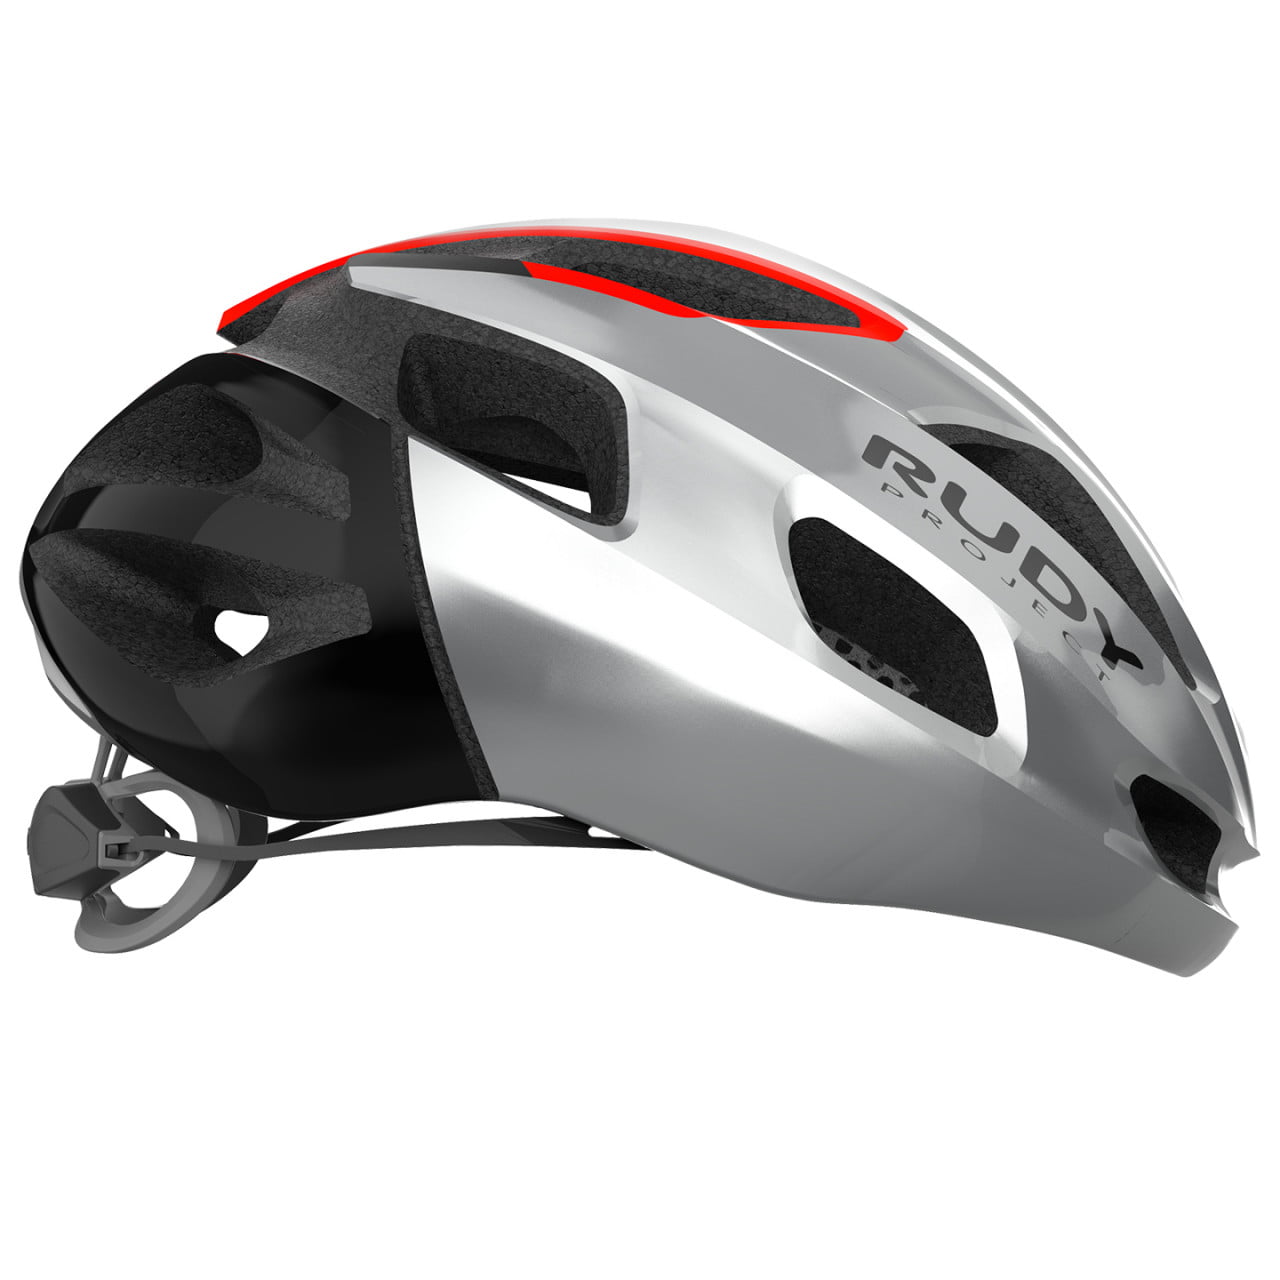 Strym 2022 Road Bike Helmet